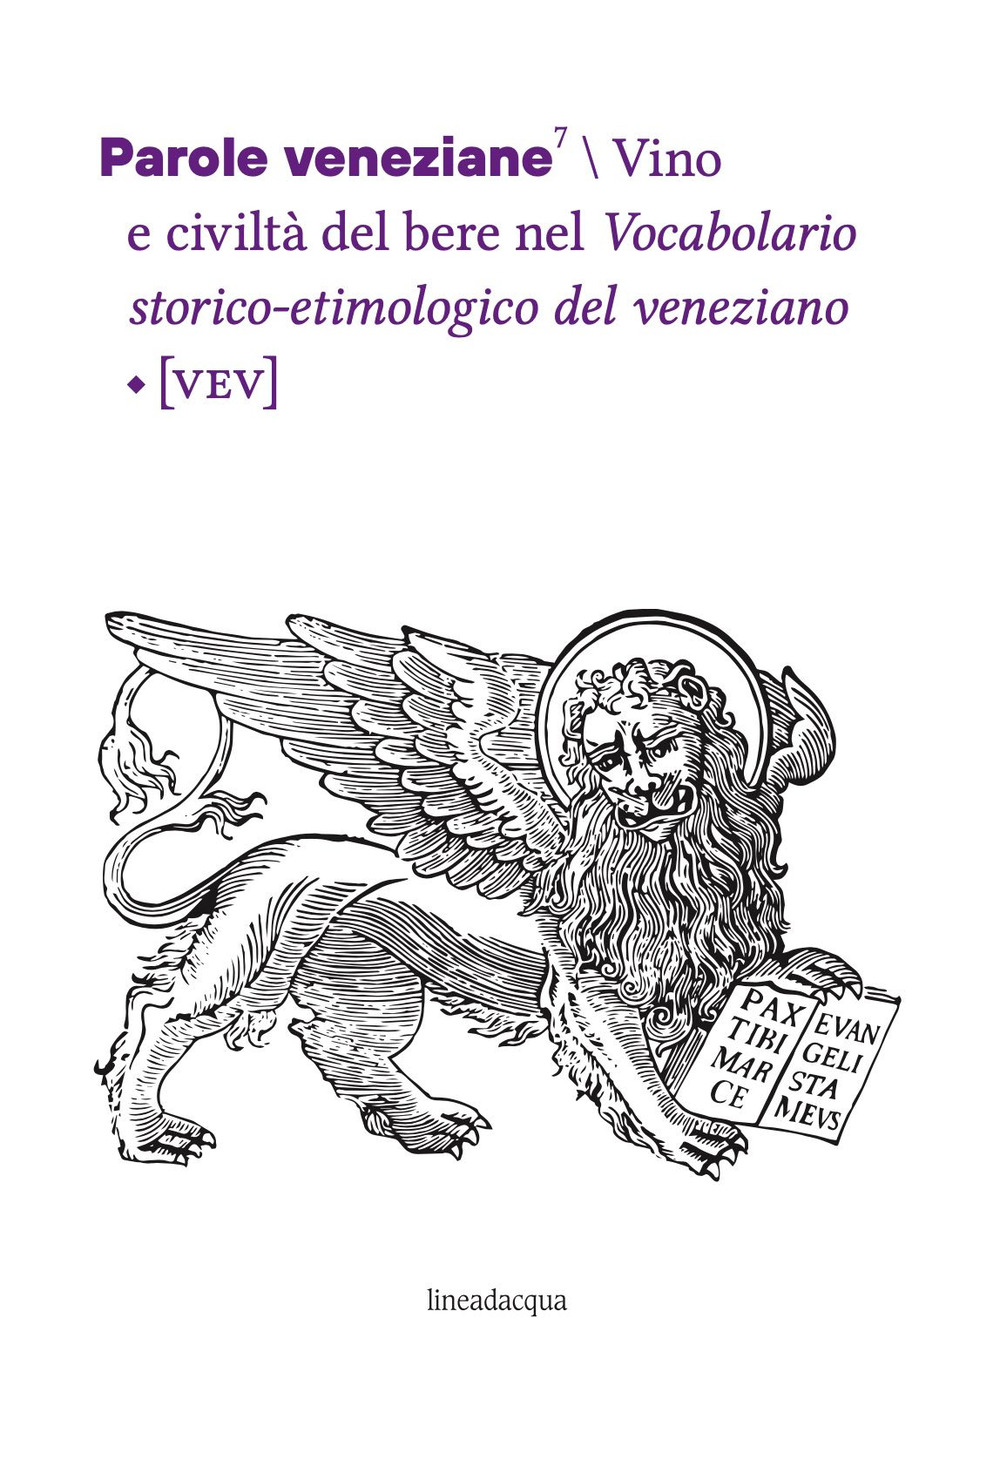 Parole veneziane. Vol. 7: Vino e civiltà del bere nel Vocabolario storico-etimologico del veneziano (VEV)